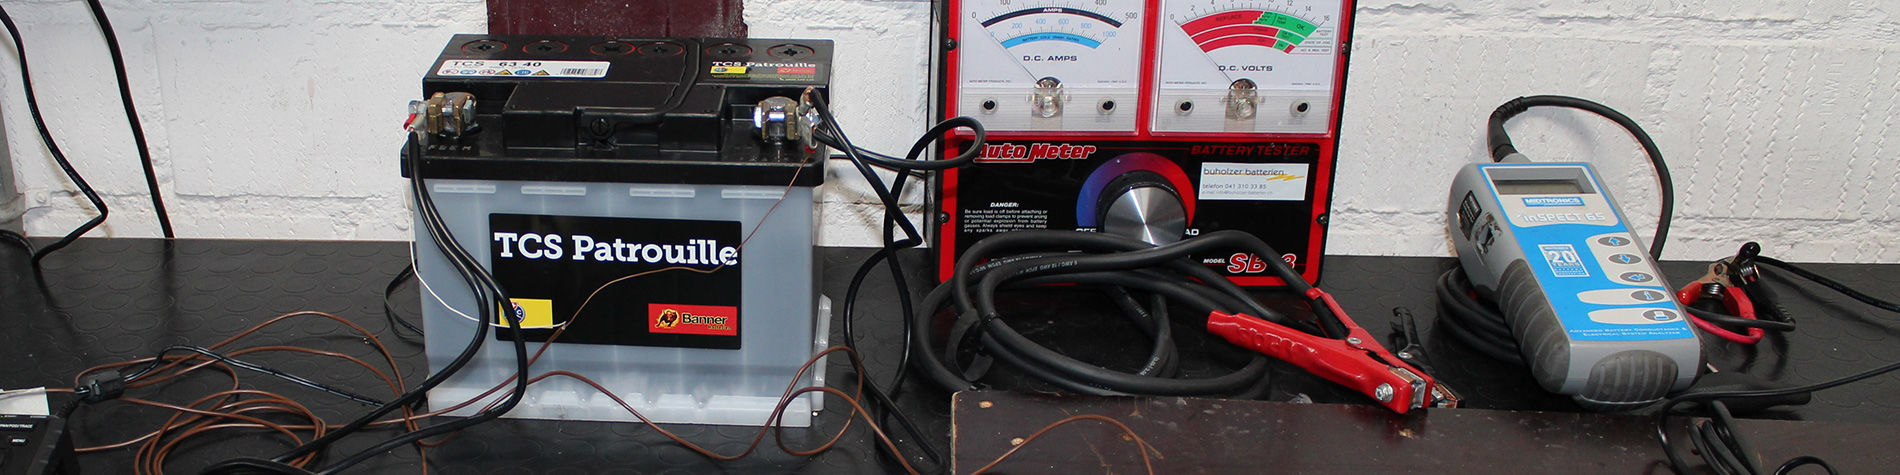 Starthilfekabel für Diesel - Anwendungsanleitung